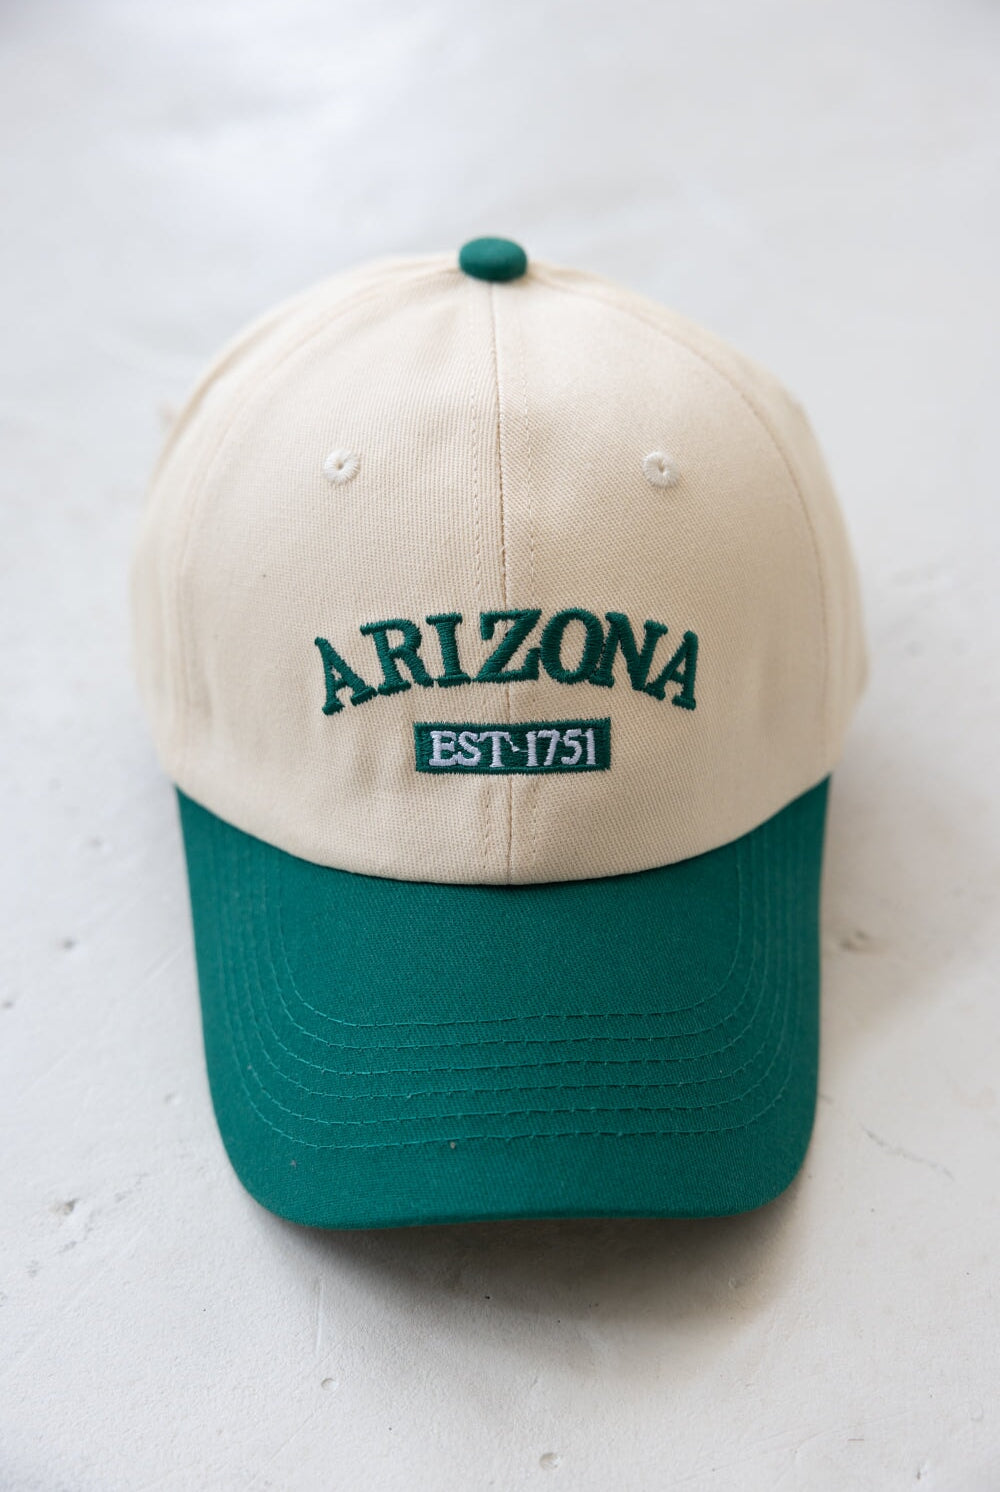 כובע אריזונה TwentySix 